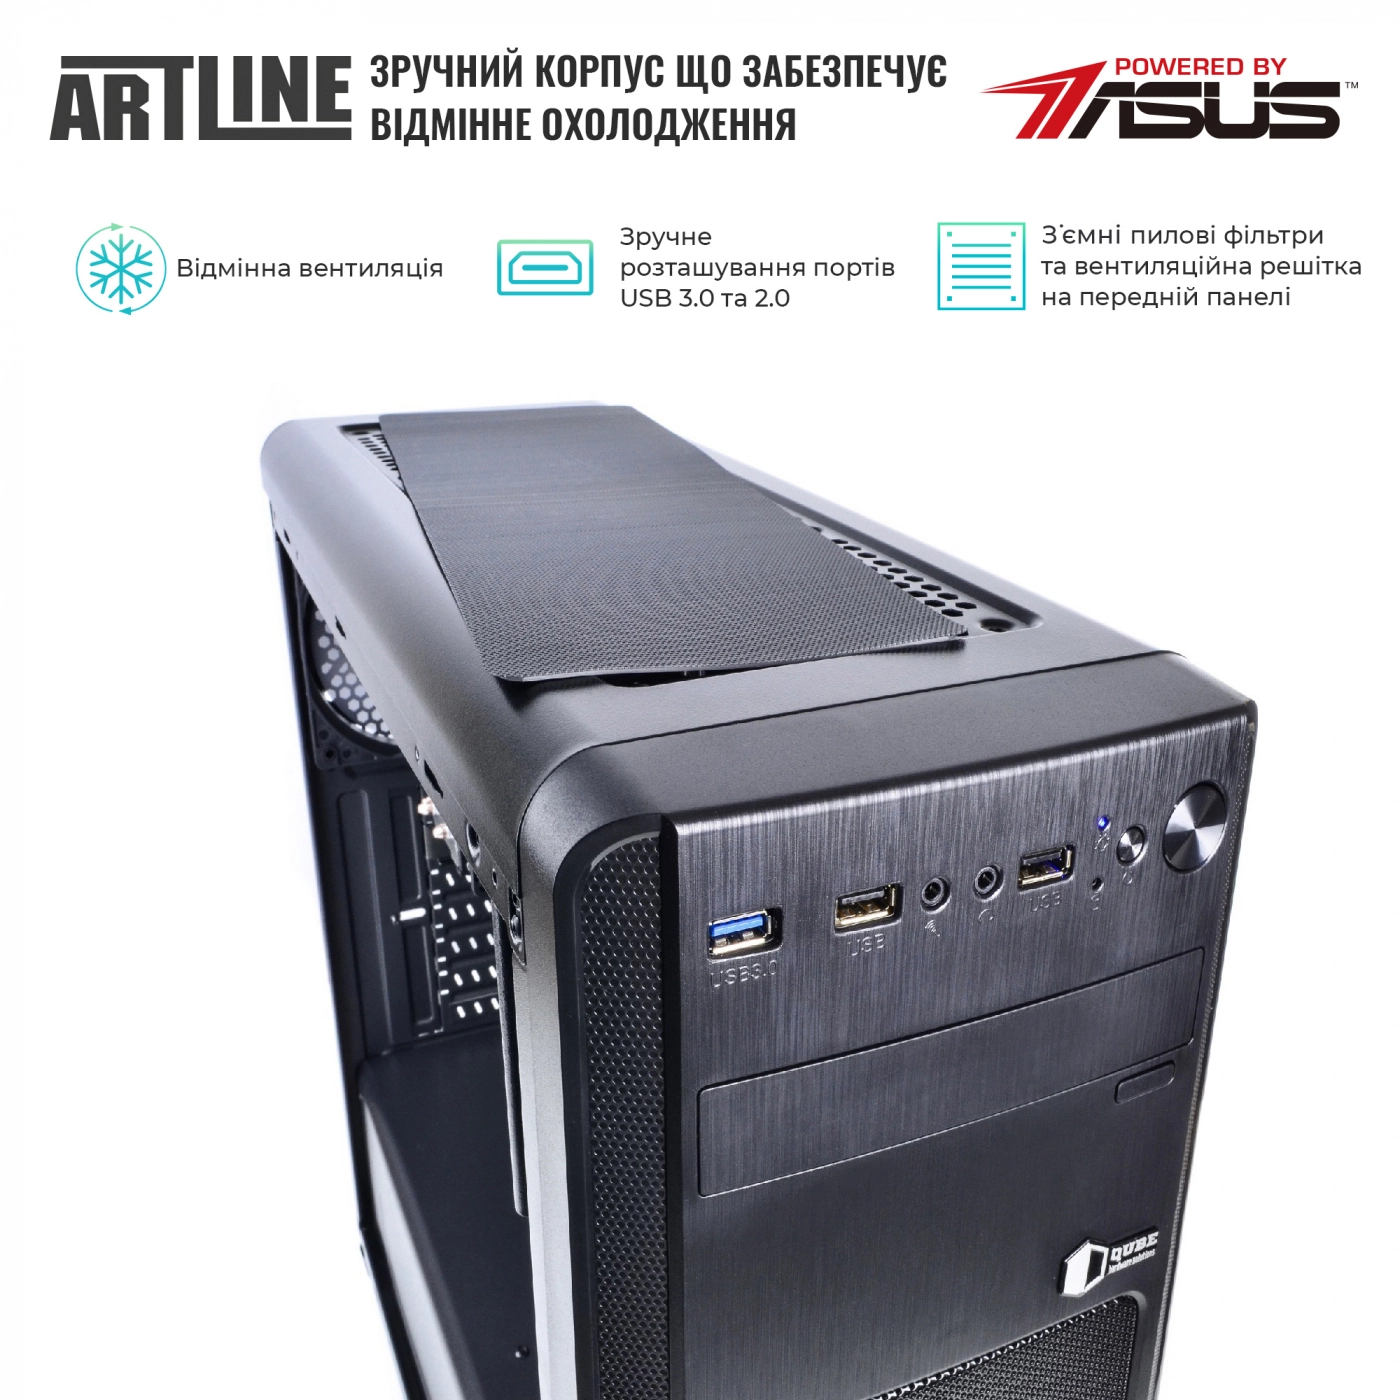 Купить Сервер ARTLINE Business T25v35 - фото 3